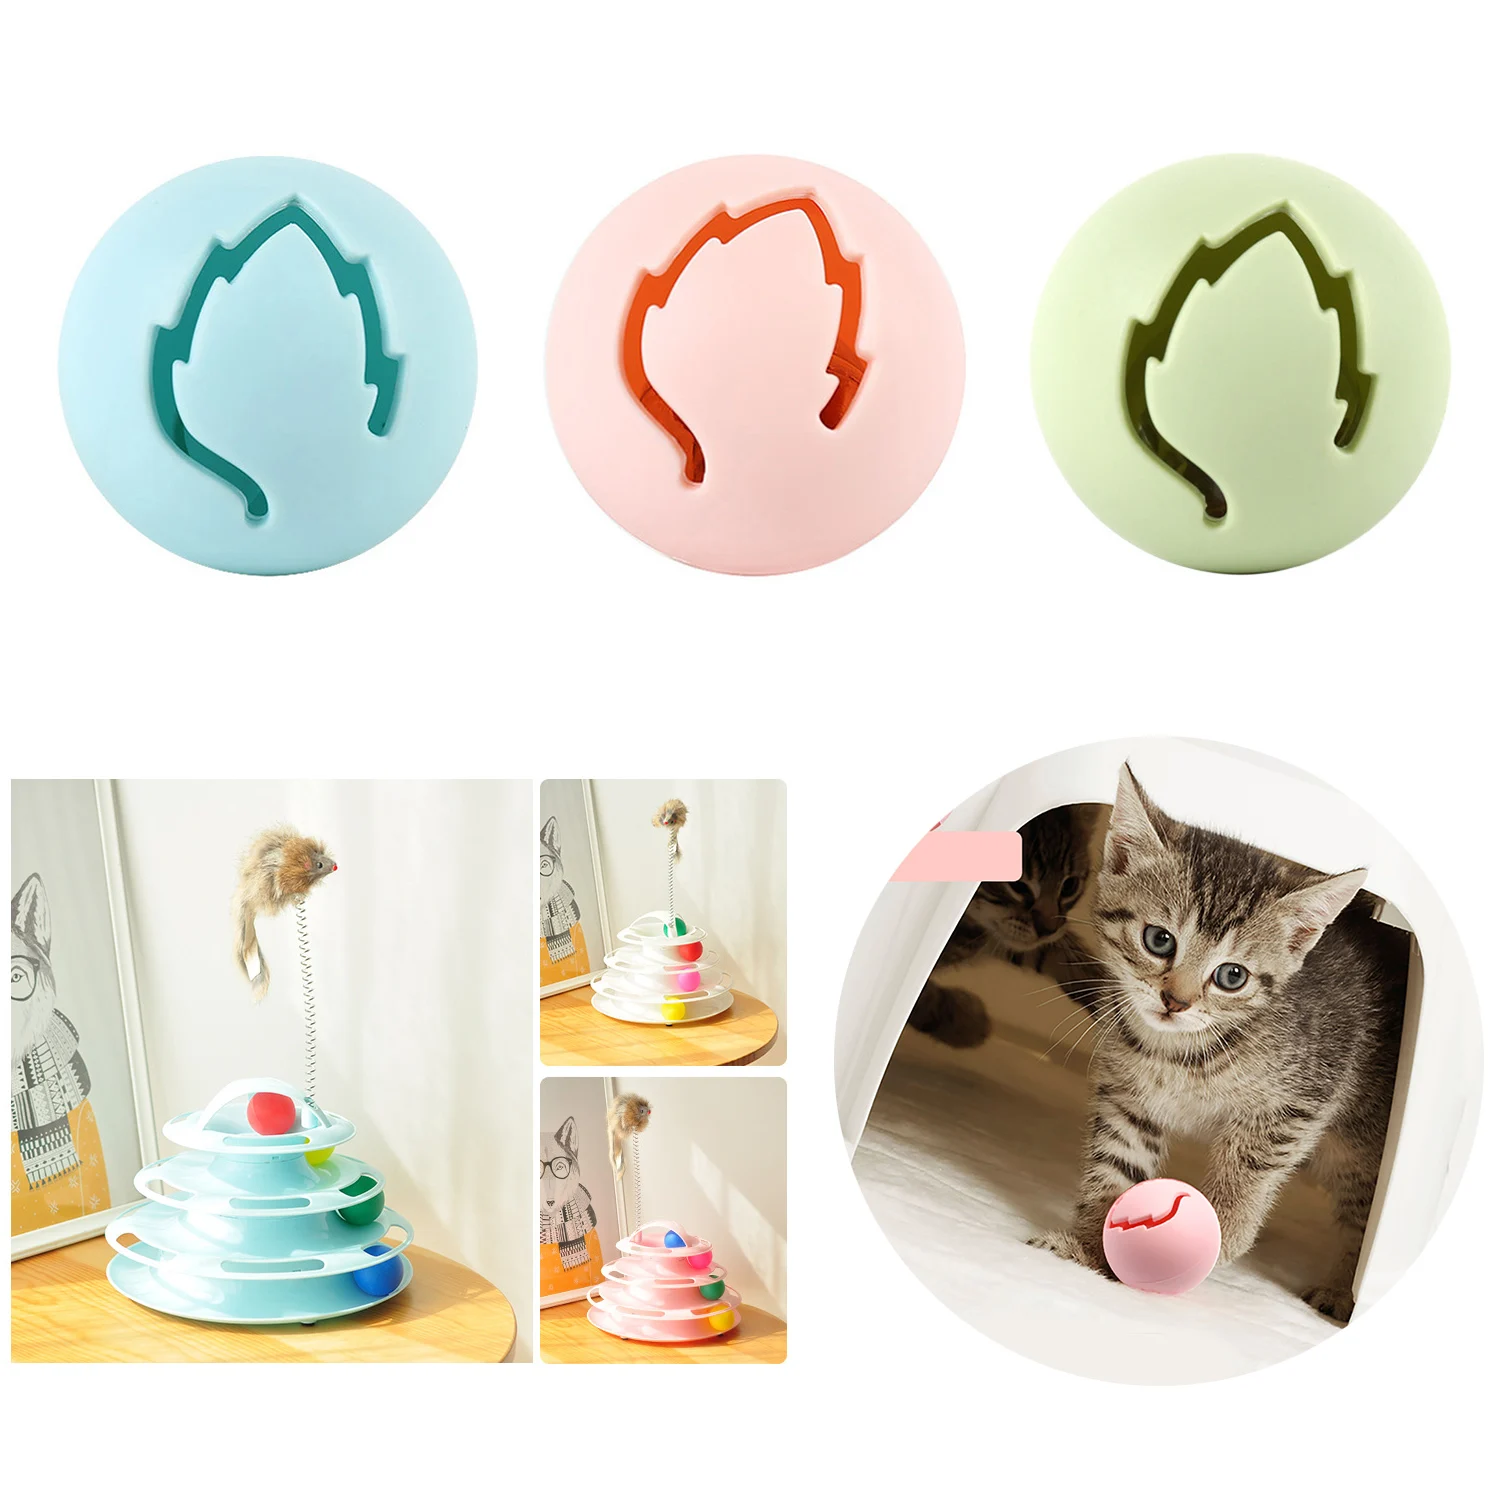 Новые 3 шт. забавные игрушки для кошек для домашнего животного игрушки кошки игрушечные домашние питомцы высокого качества колокольчики для кошек Catnip мяч игрушки для кошек котенок